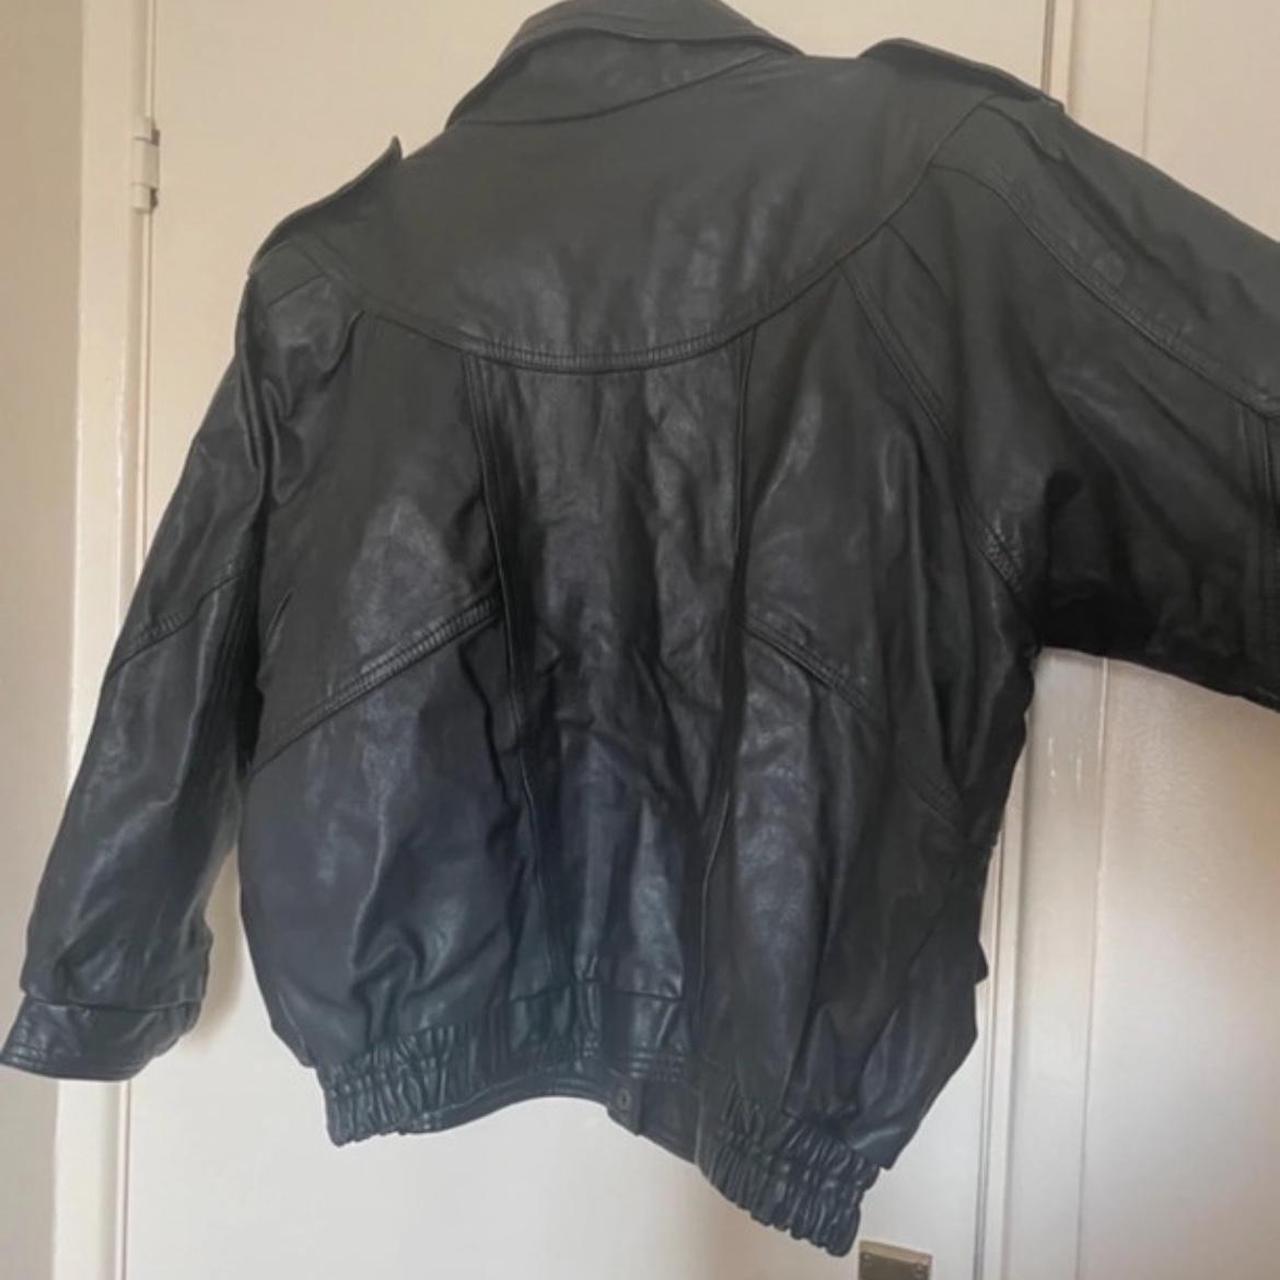 Vintage leather jacket - Depop